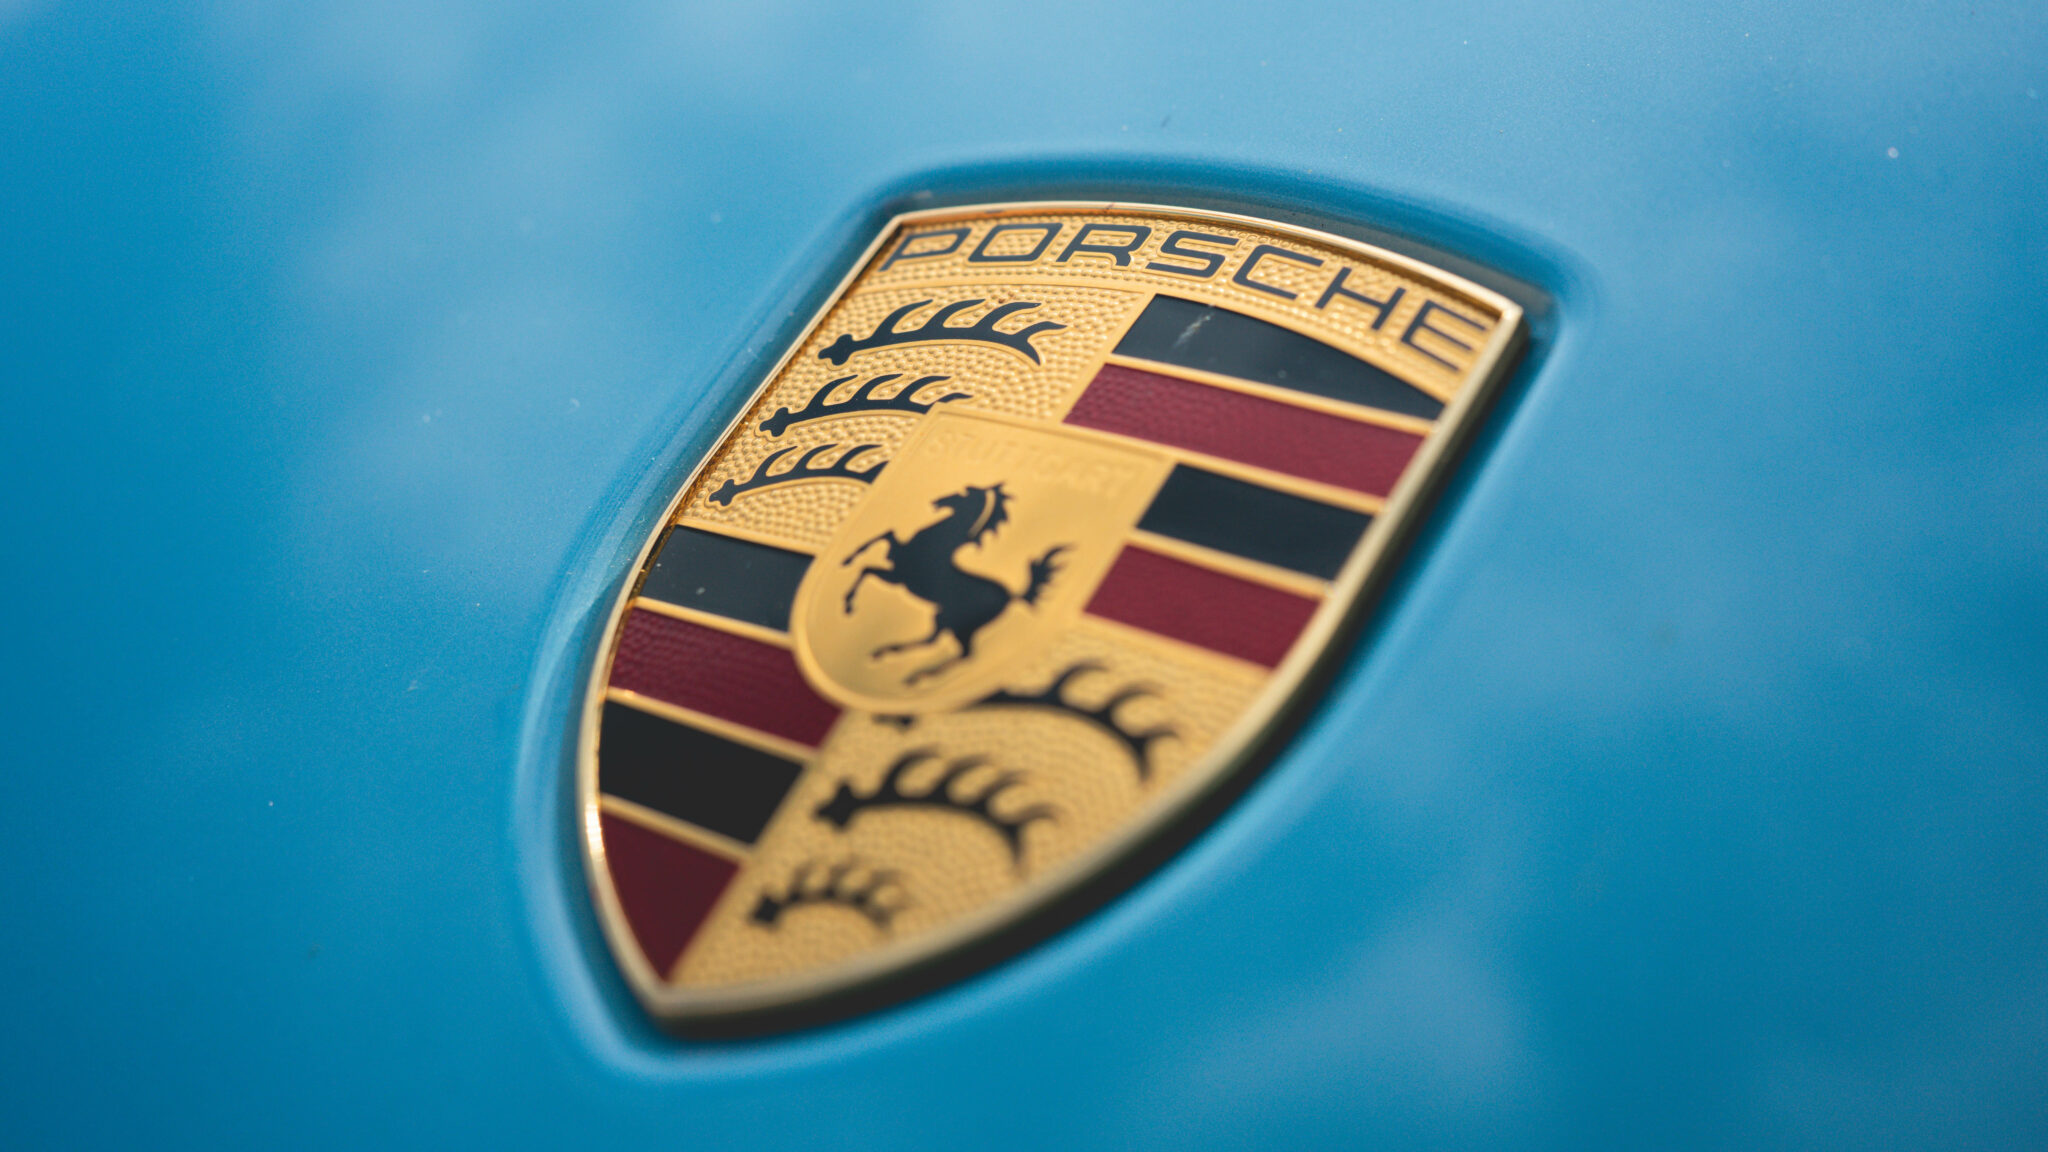 Porsche Taycan Turbo S, De ultieme elektrische supercar getest: Porsche Taycan Turbo S